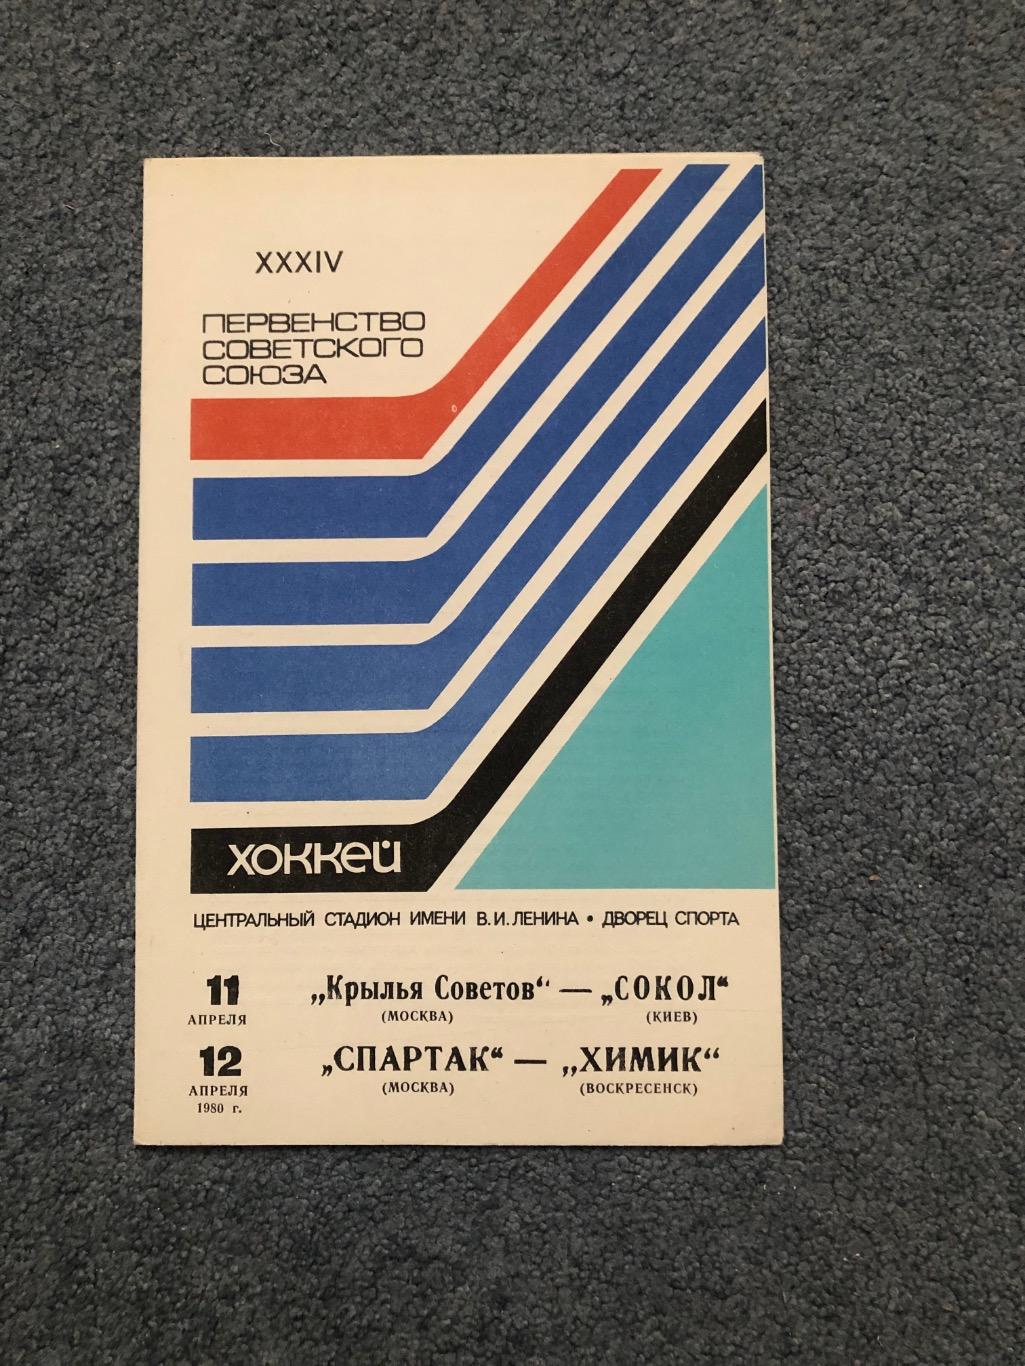 Крылья Советов - Сокол Киев, Спартак Москва - Химик, 11 и 12.04.1980